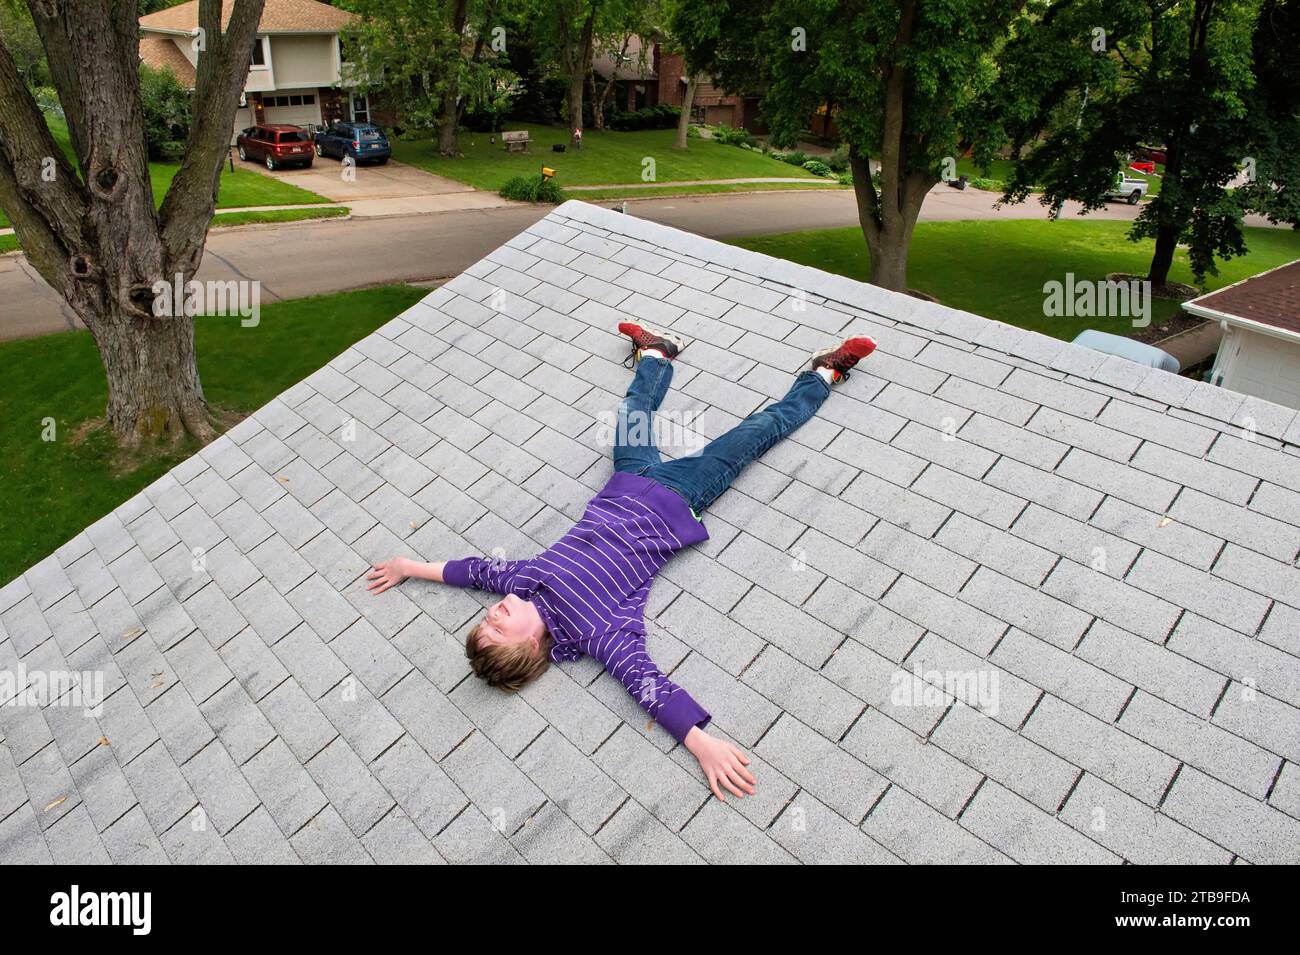 Junge im Grundalter, der auf dem Schindeldach eines Hauses liegt; Elkhorn, Nebraska, Vereinigte Staaten von Amerika Stockfoto